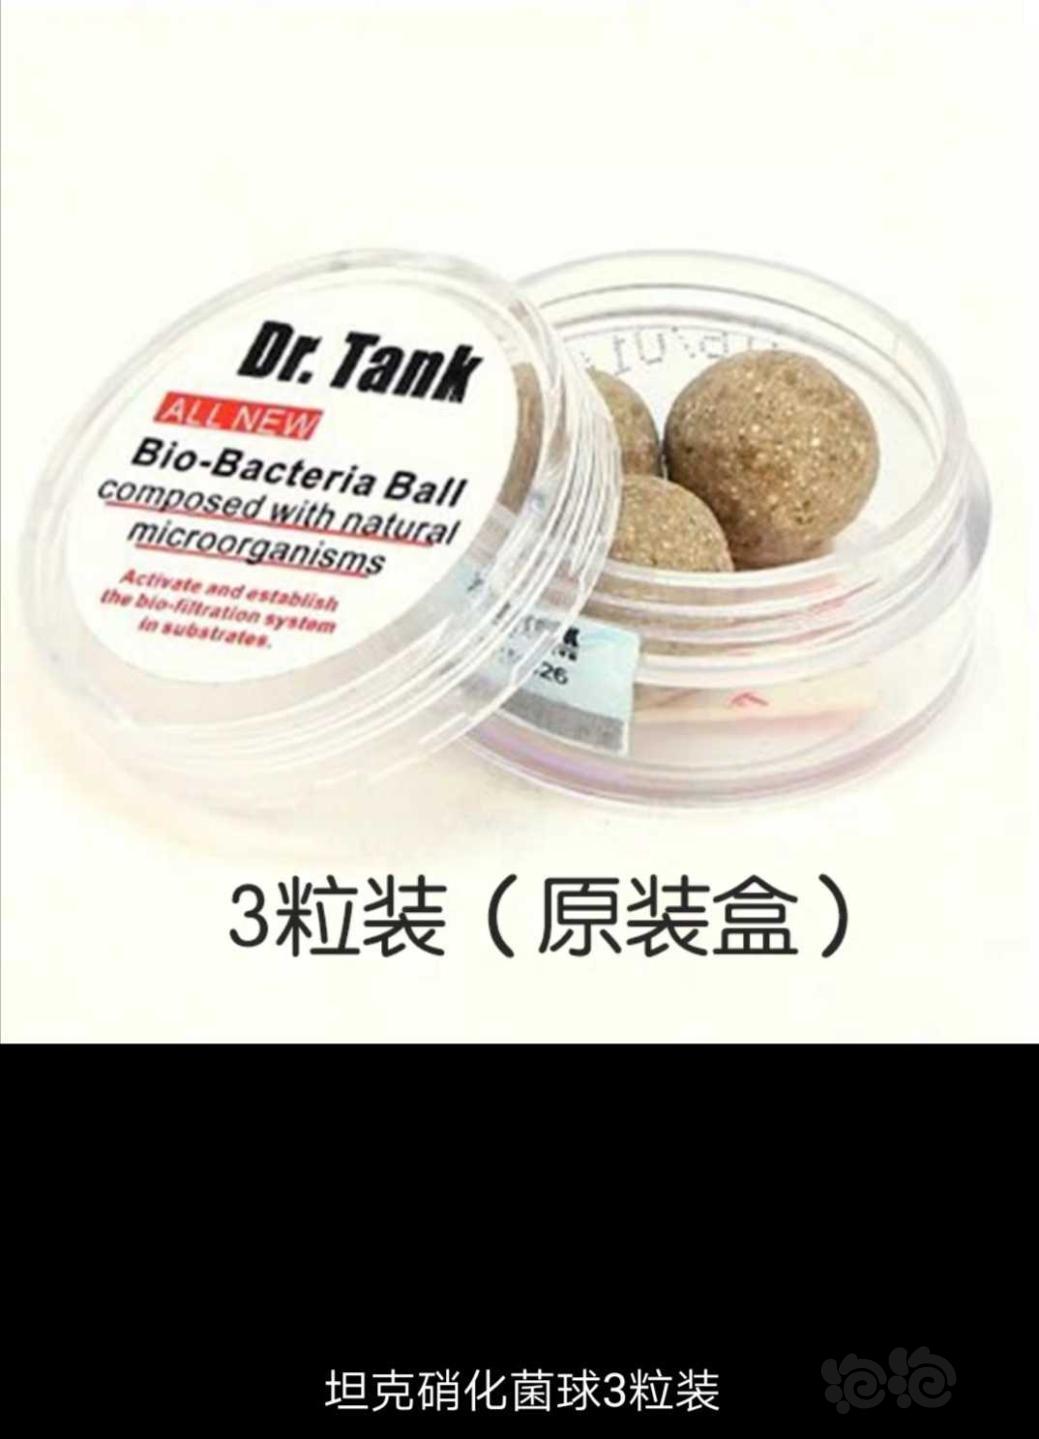 【用品】2019-12-02#RMB拍卖坦克二代硝化细菌球三粒装*3盒-图2